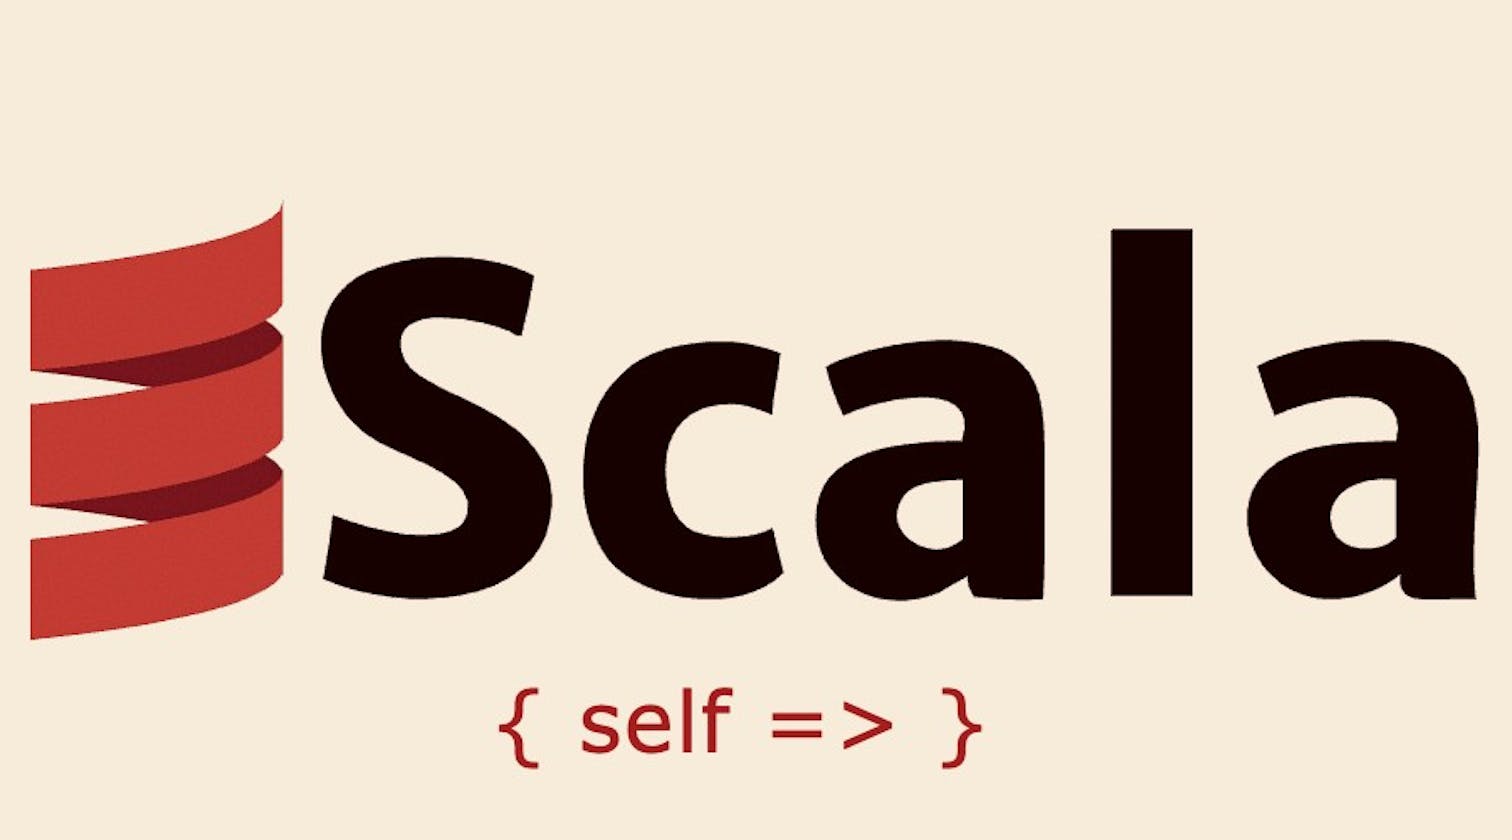 Self Type in Scala